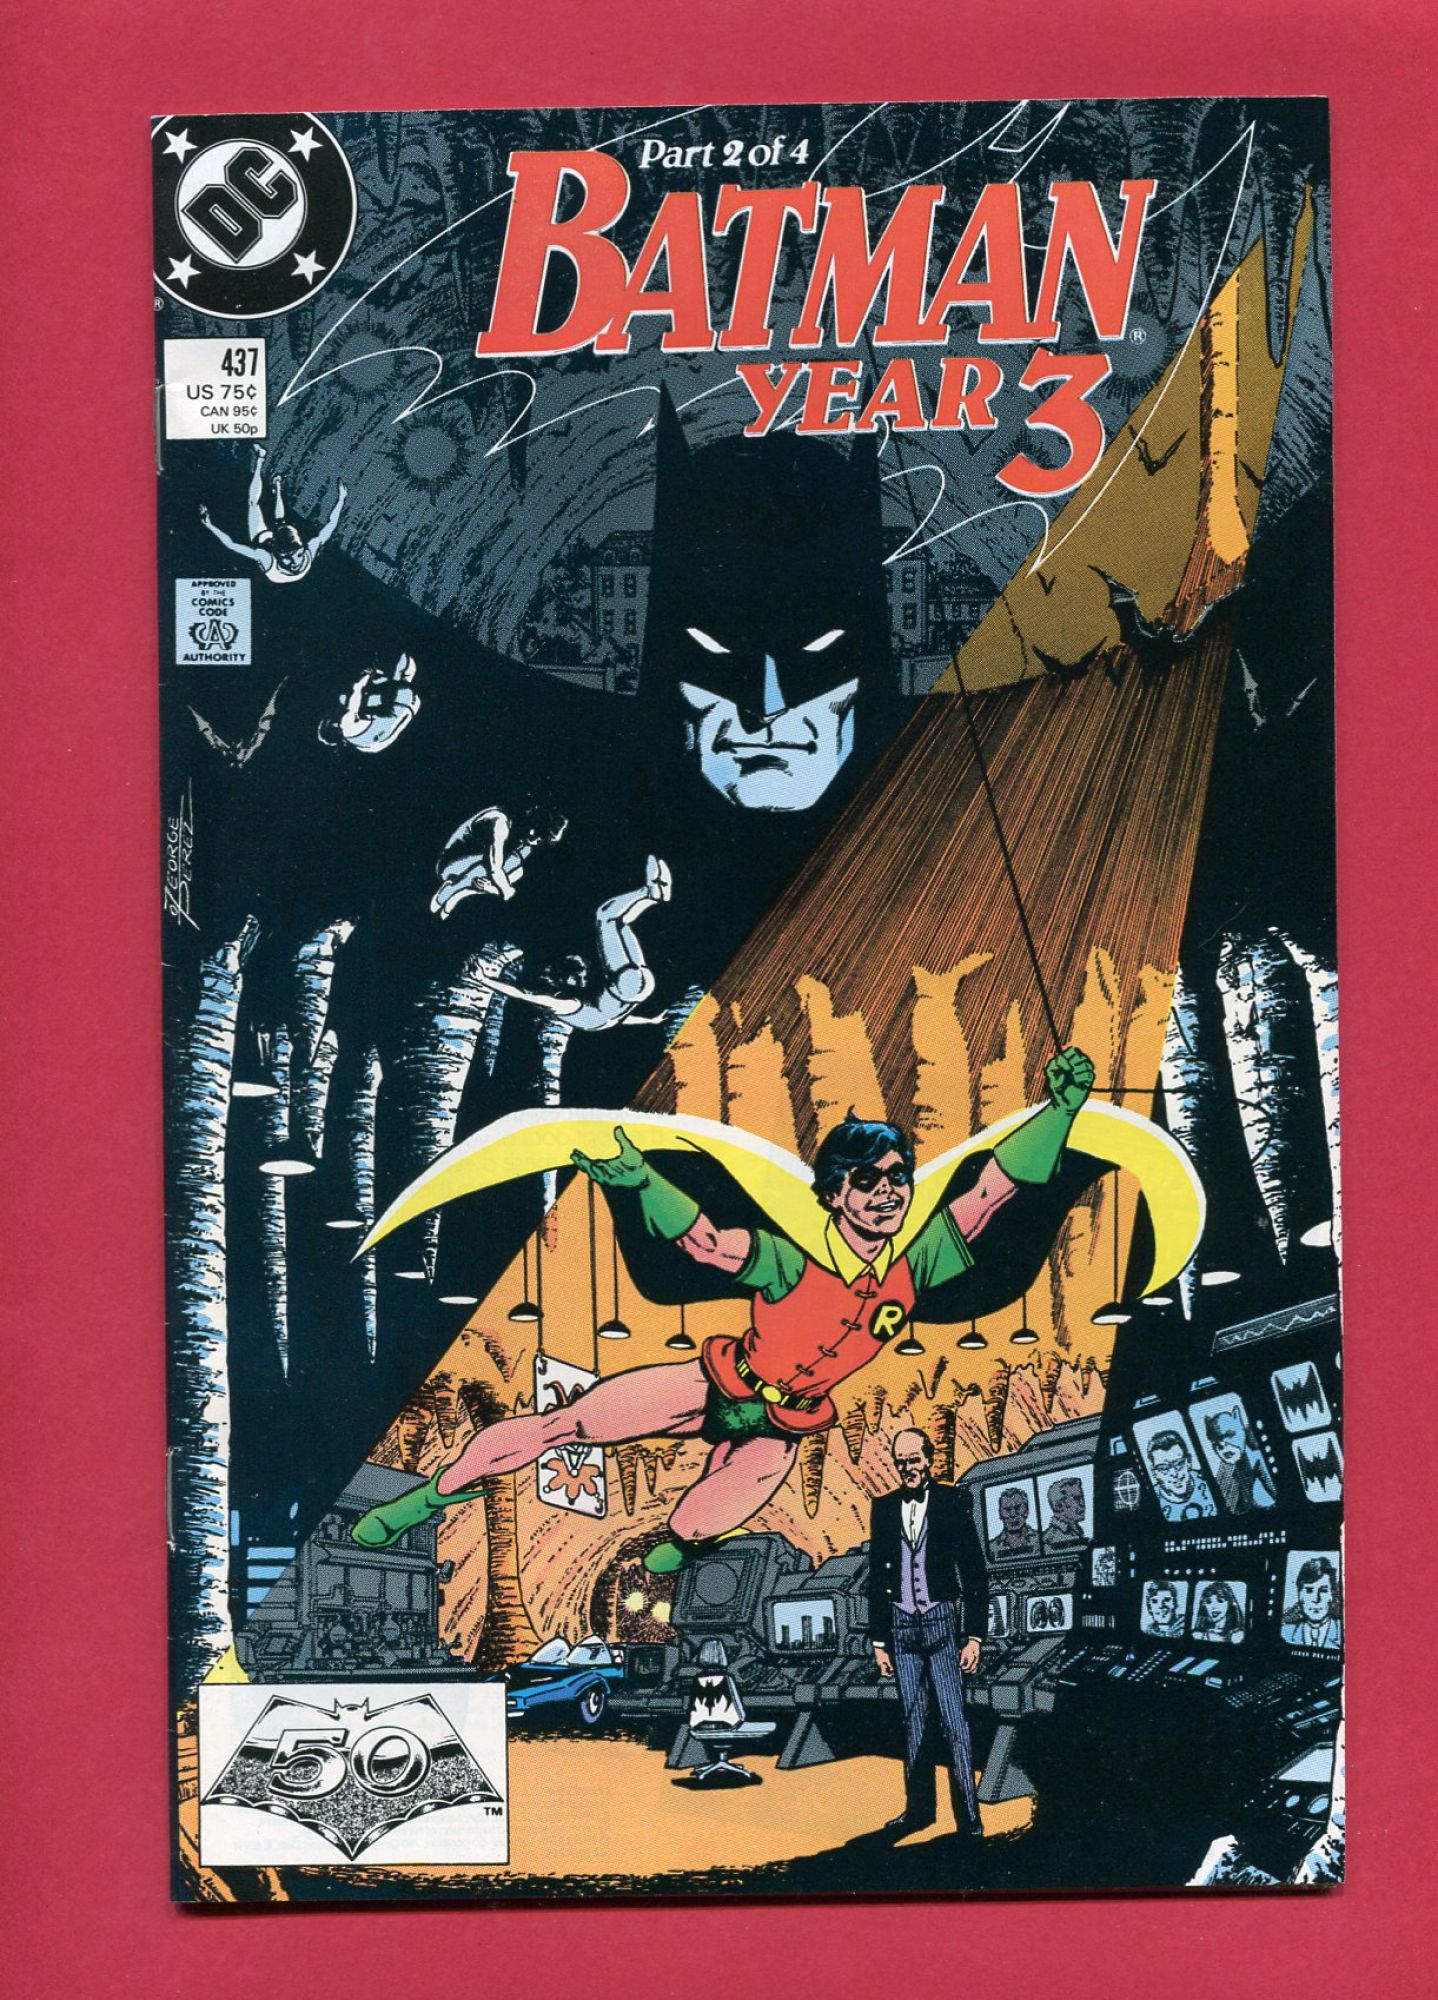 Batman #437, Aug 1989, 8.5 VF+